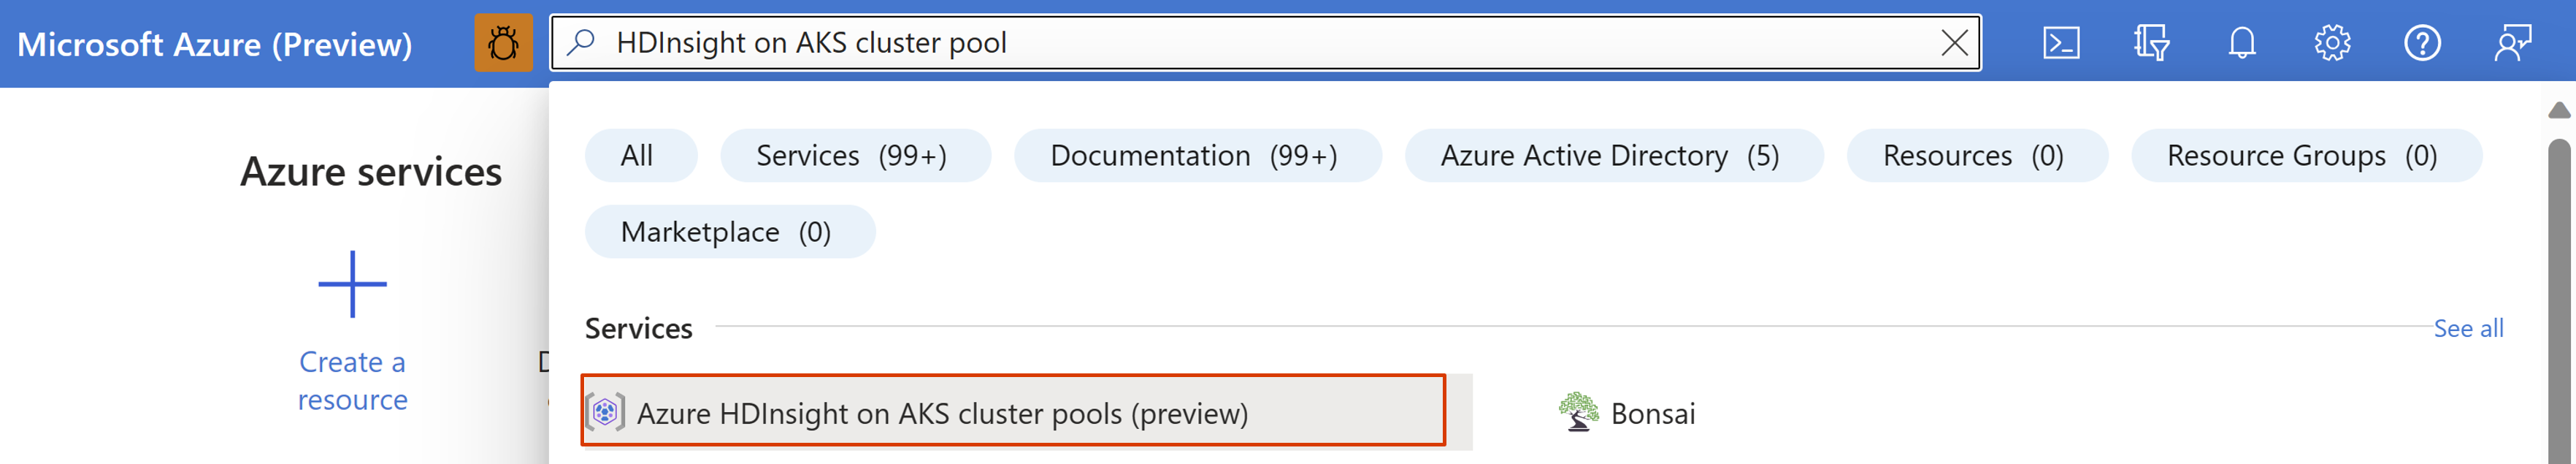 Снимок экрана: панель поиска в портал Azure.